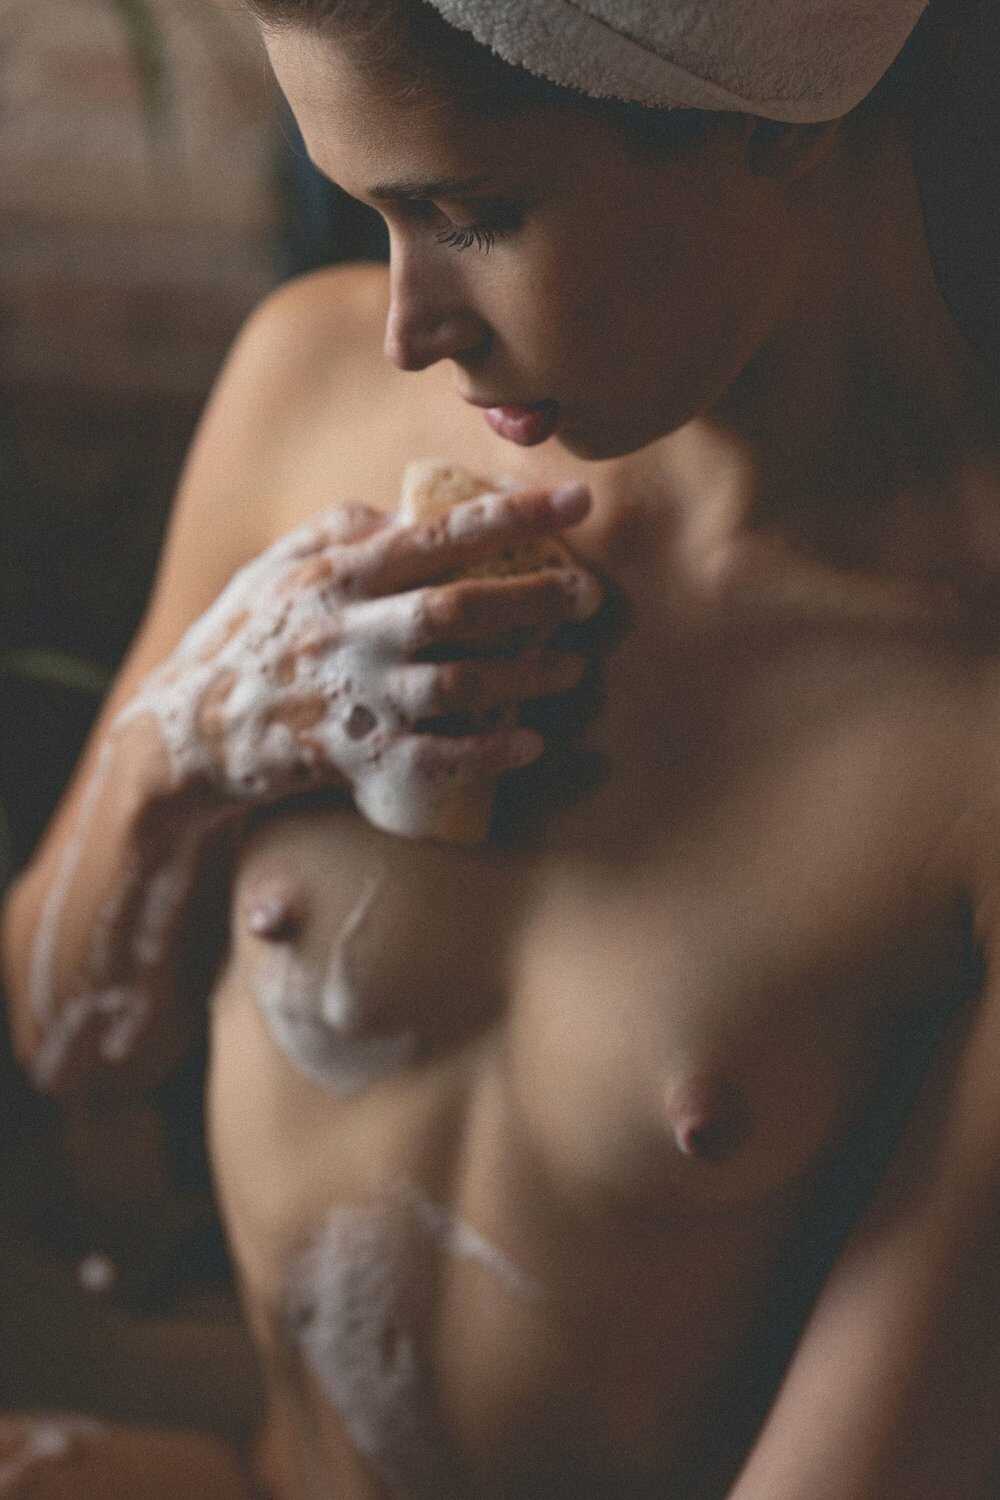 Γυμνές φωτογραφίες της μουνάρας Ksenia Bonndar στο μπάνιο